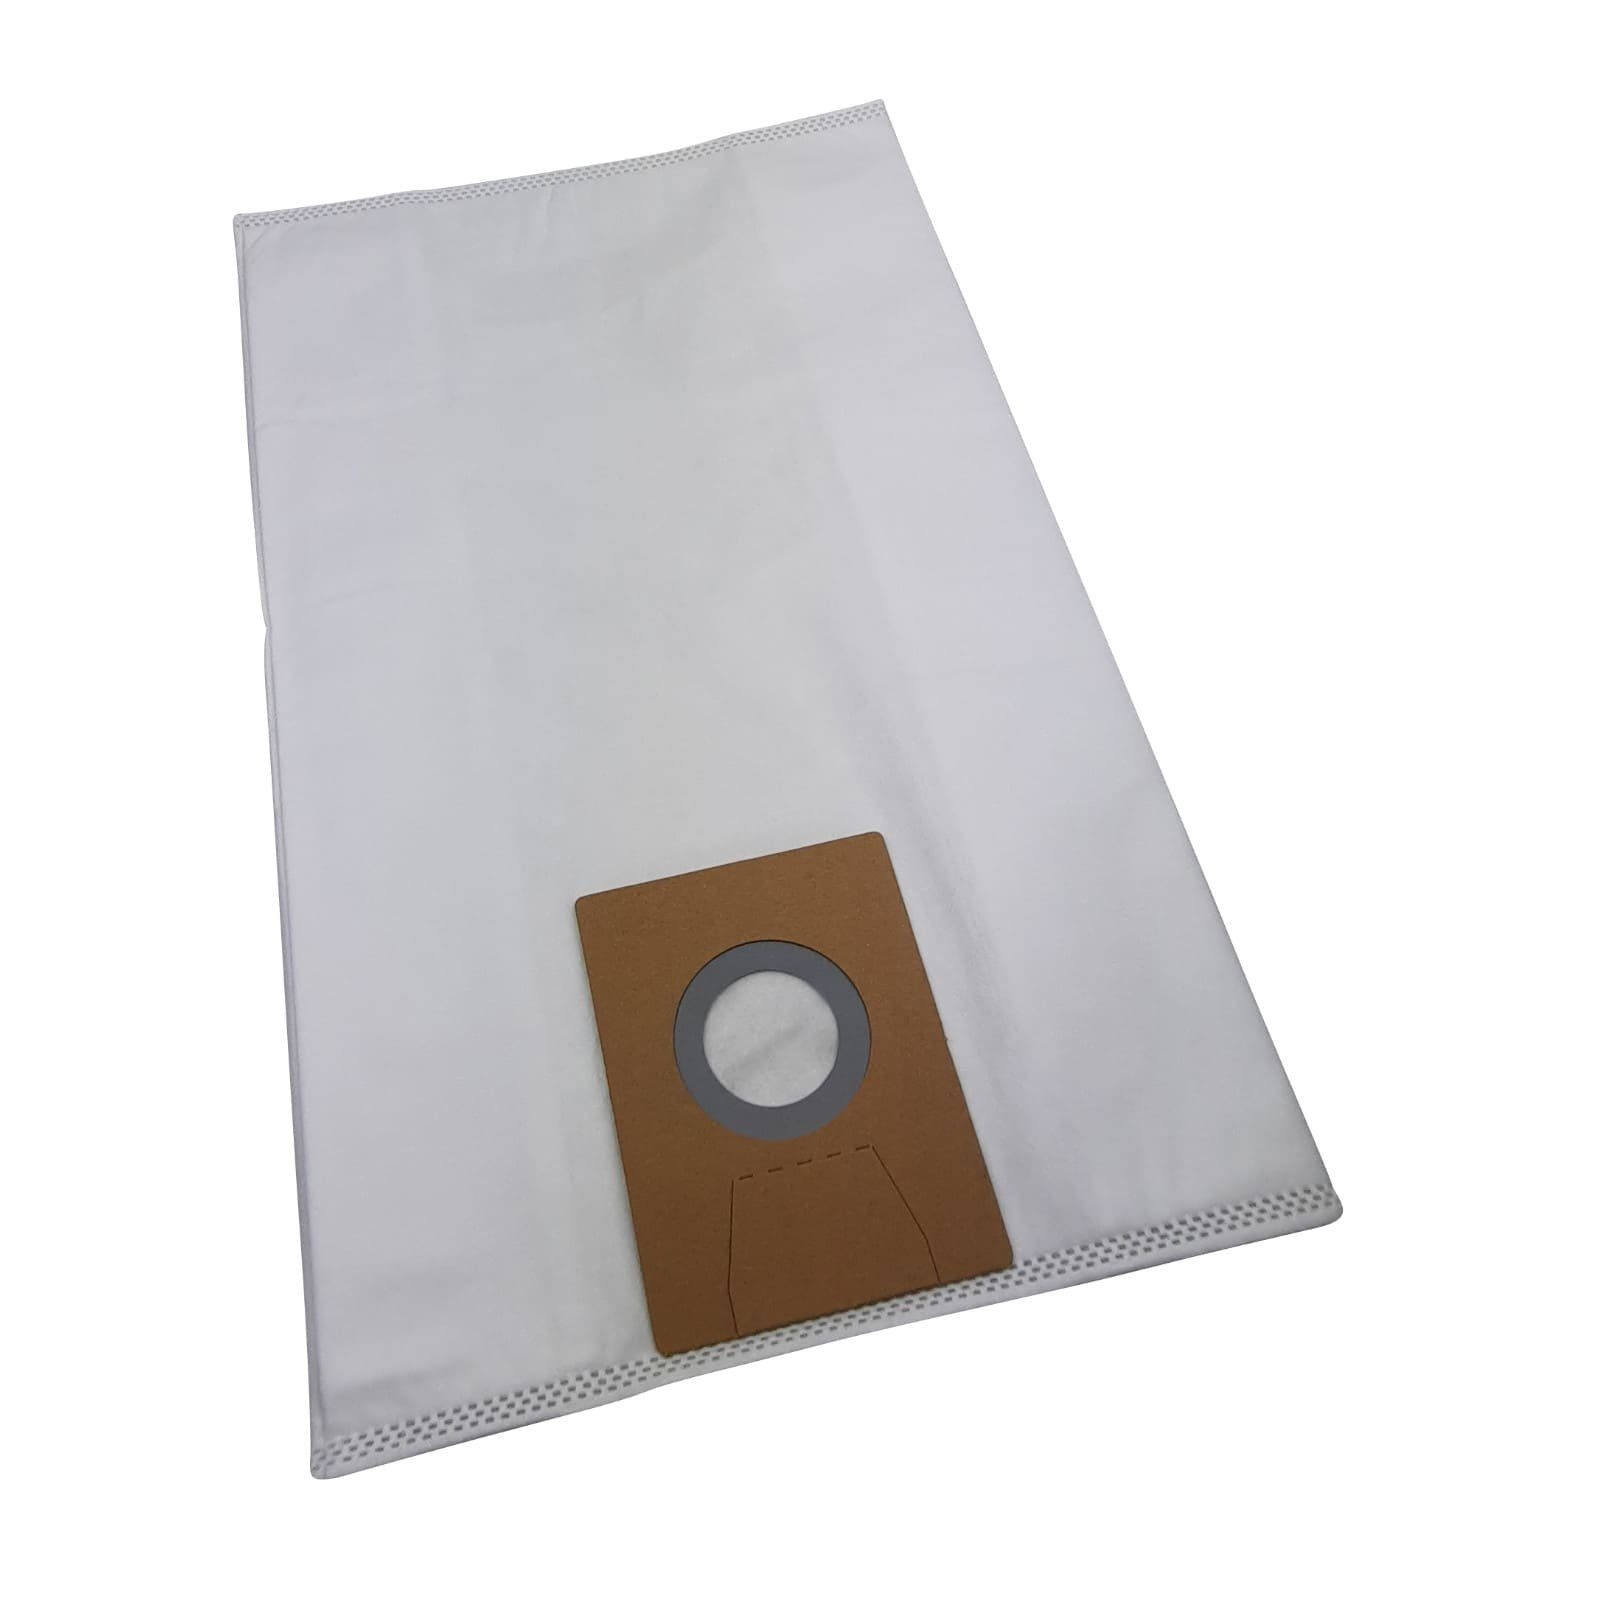 Reinica Staubsaugerbeutel passend für Clean a la Card K103200942, 10er-Pack Staubbeutel Saugerbeutel Beutel Filtertüten